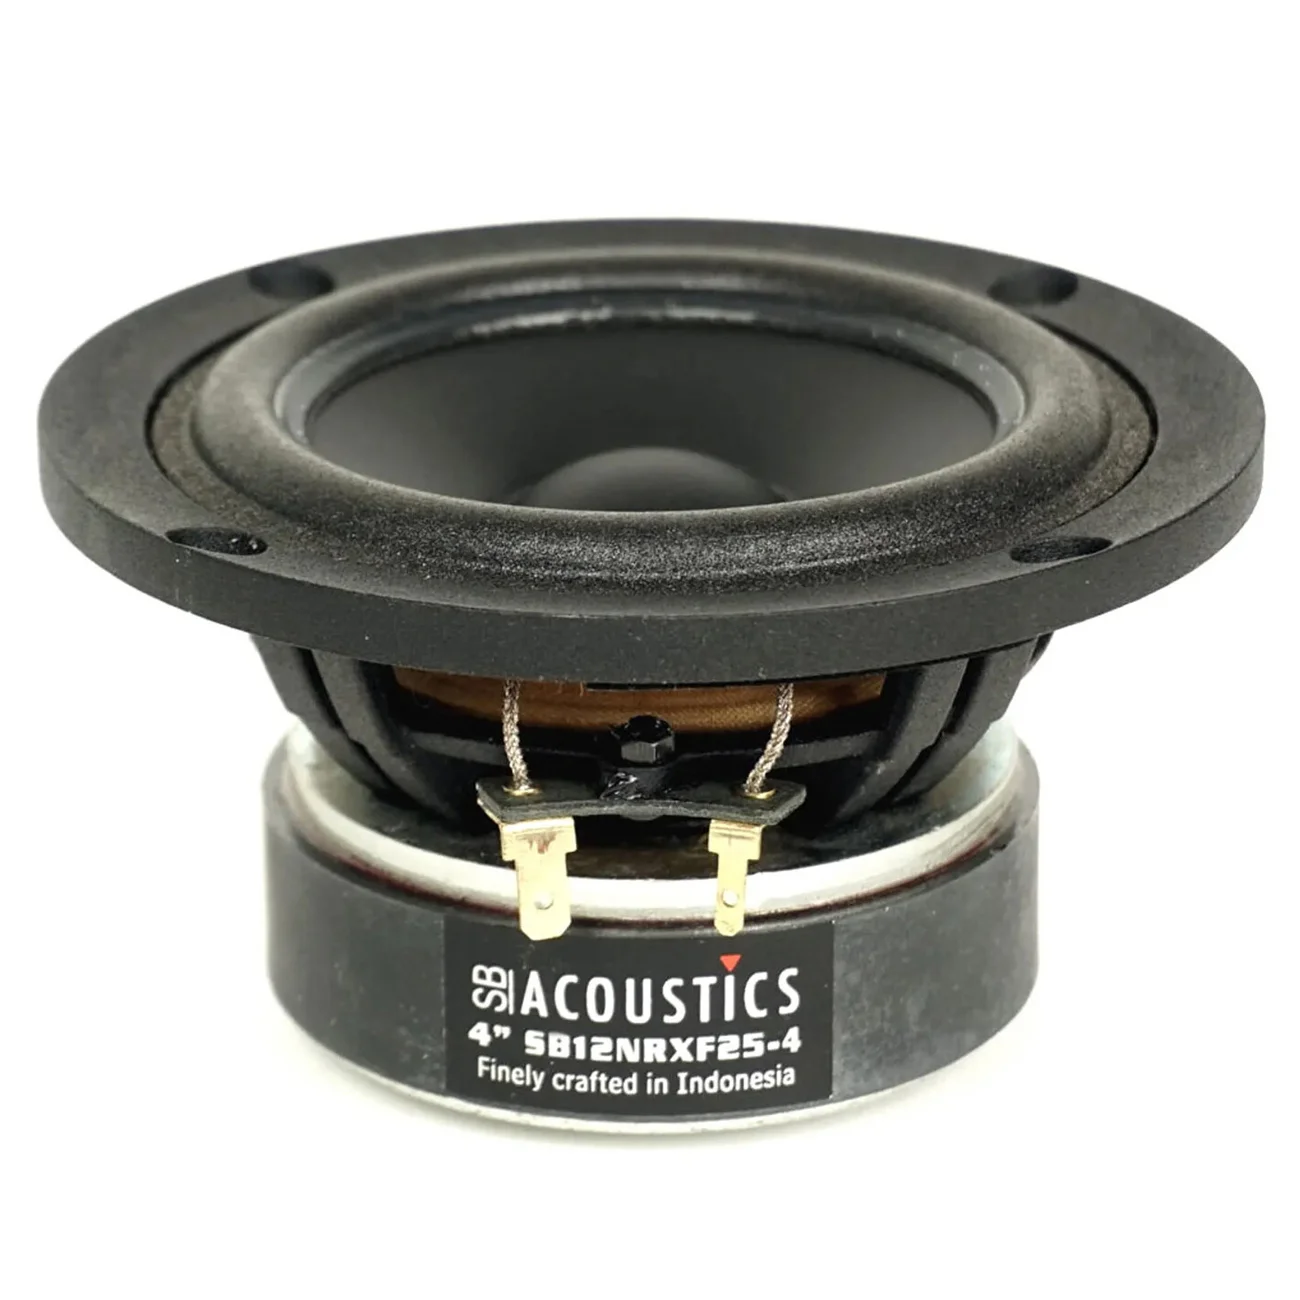 Woofere & midbas - SB Acoustics SB12NRXF25-4, audioclub.ro